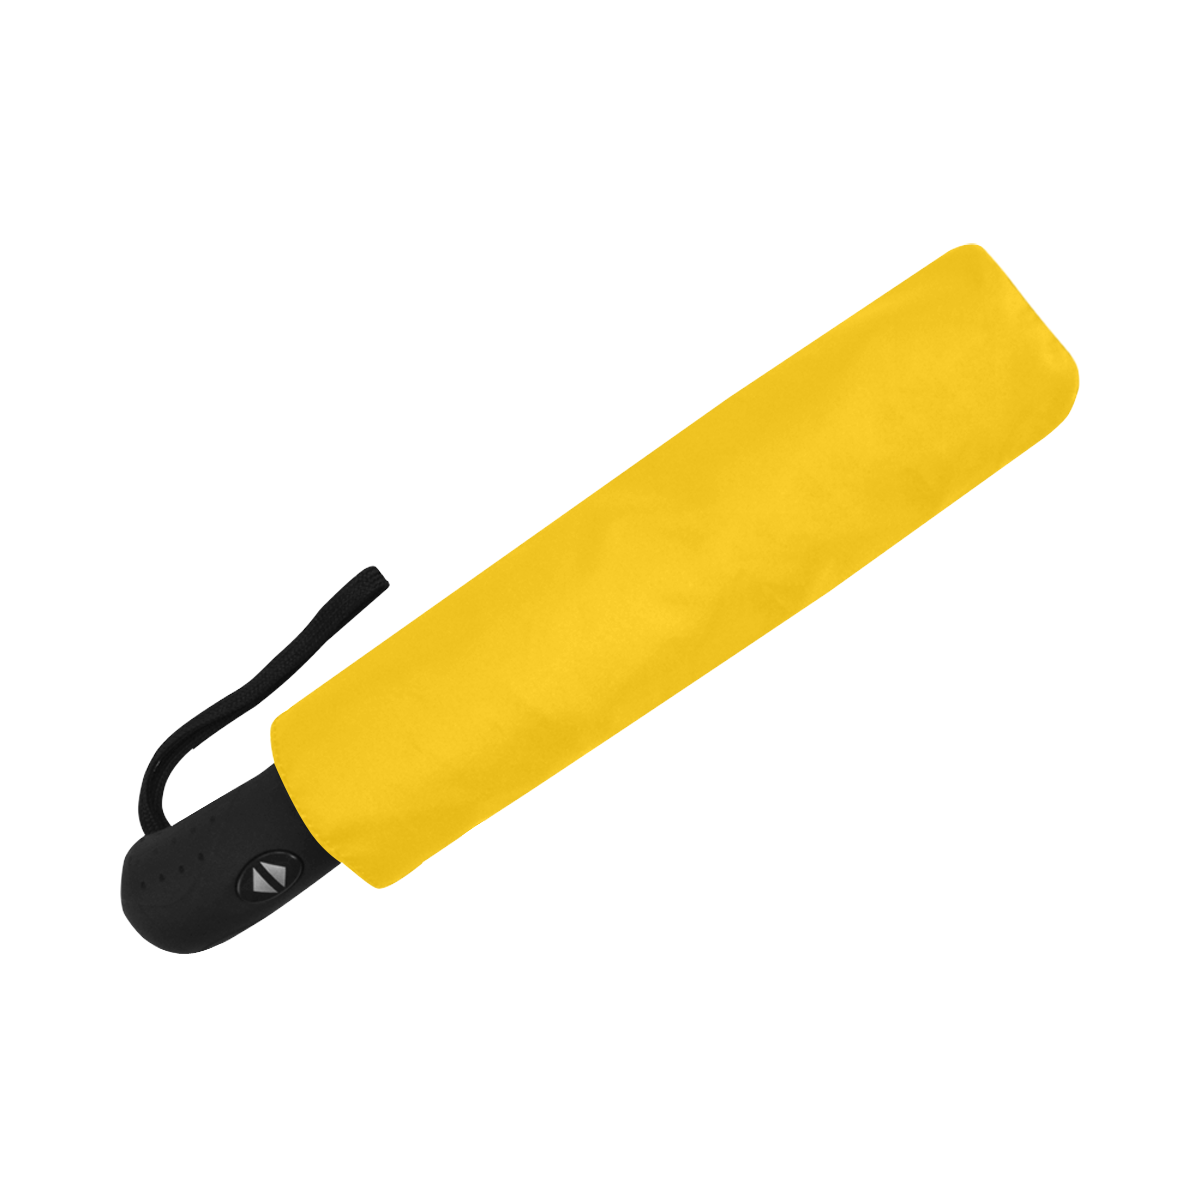 color mango Anti-UV Auto-Foldable Umbrella (U09)